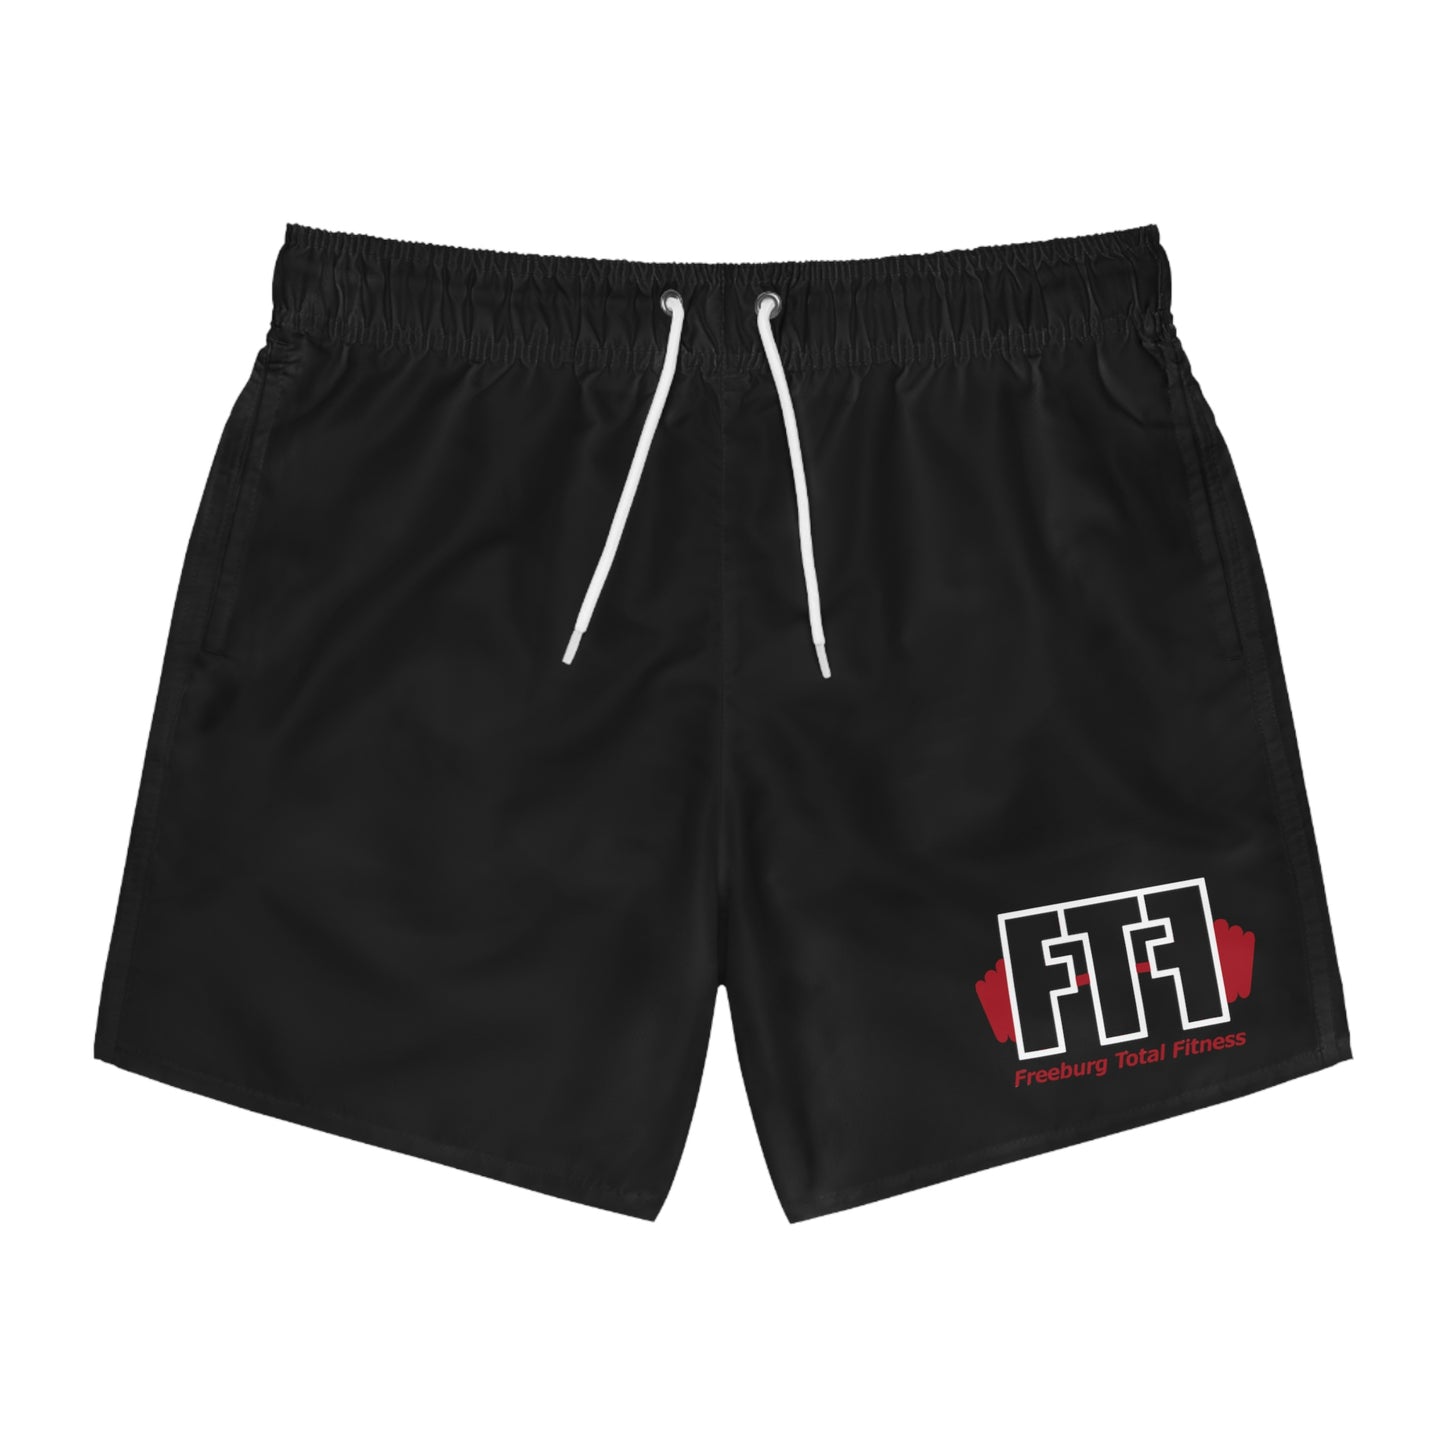 FTF Shorts Black